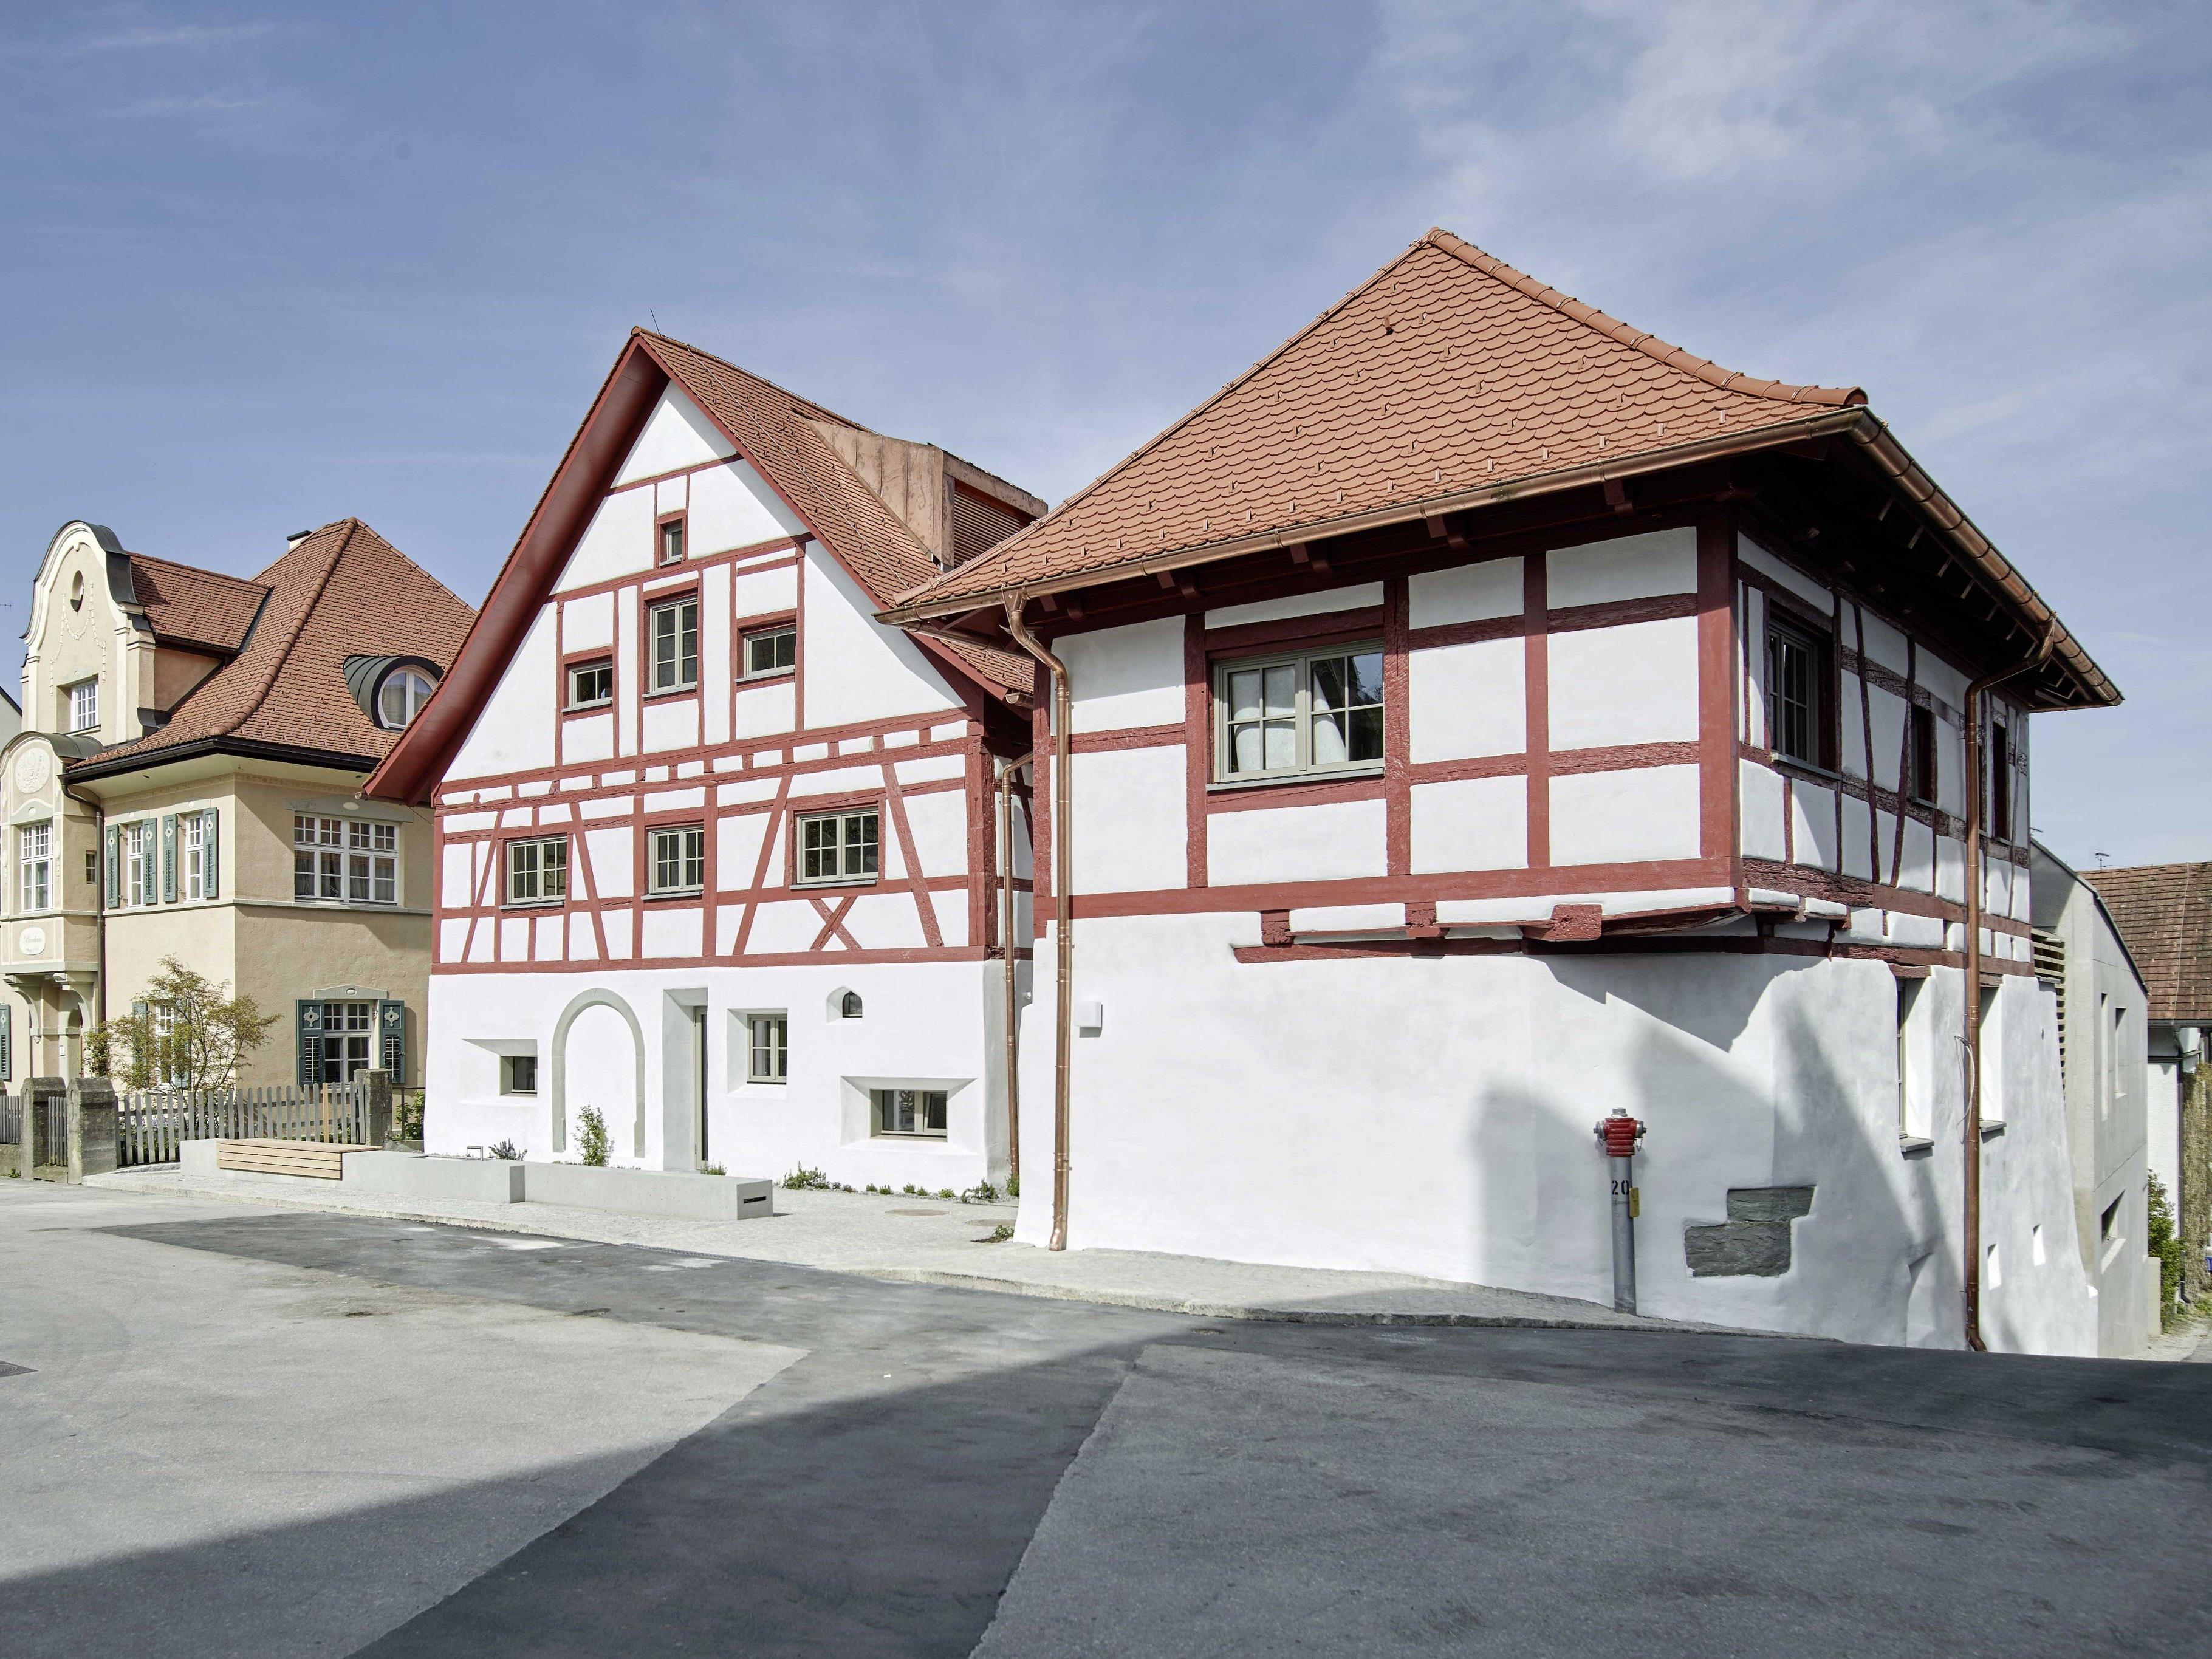 Tage der offenen Tür am 30. April und 1. Mai im neu renovierten Fachwerkhaus-Ensemble „Kolpingplatz 3“ in Bregenz.